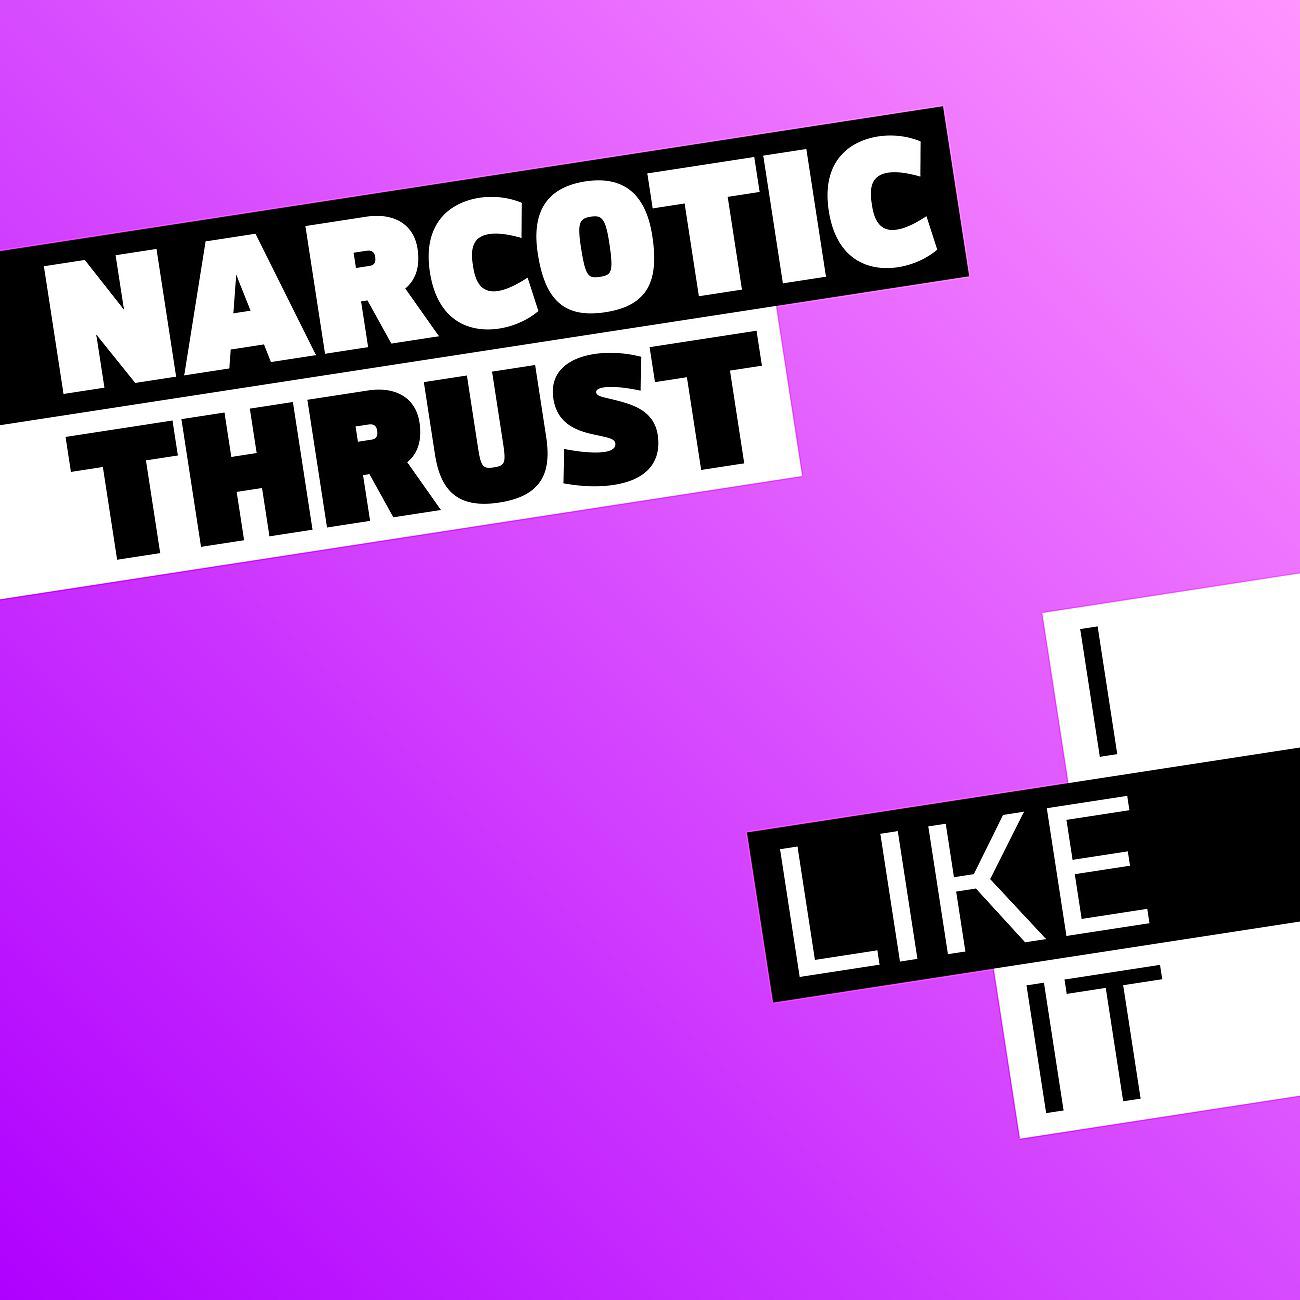 I like it is song. Группа Narcotic Thrust. Наркотик Траст ай лайк ИТ. Narcotic Thrust i like. I like it Narcotic Thrust ремикс.